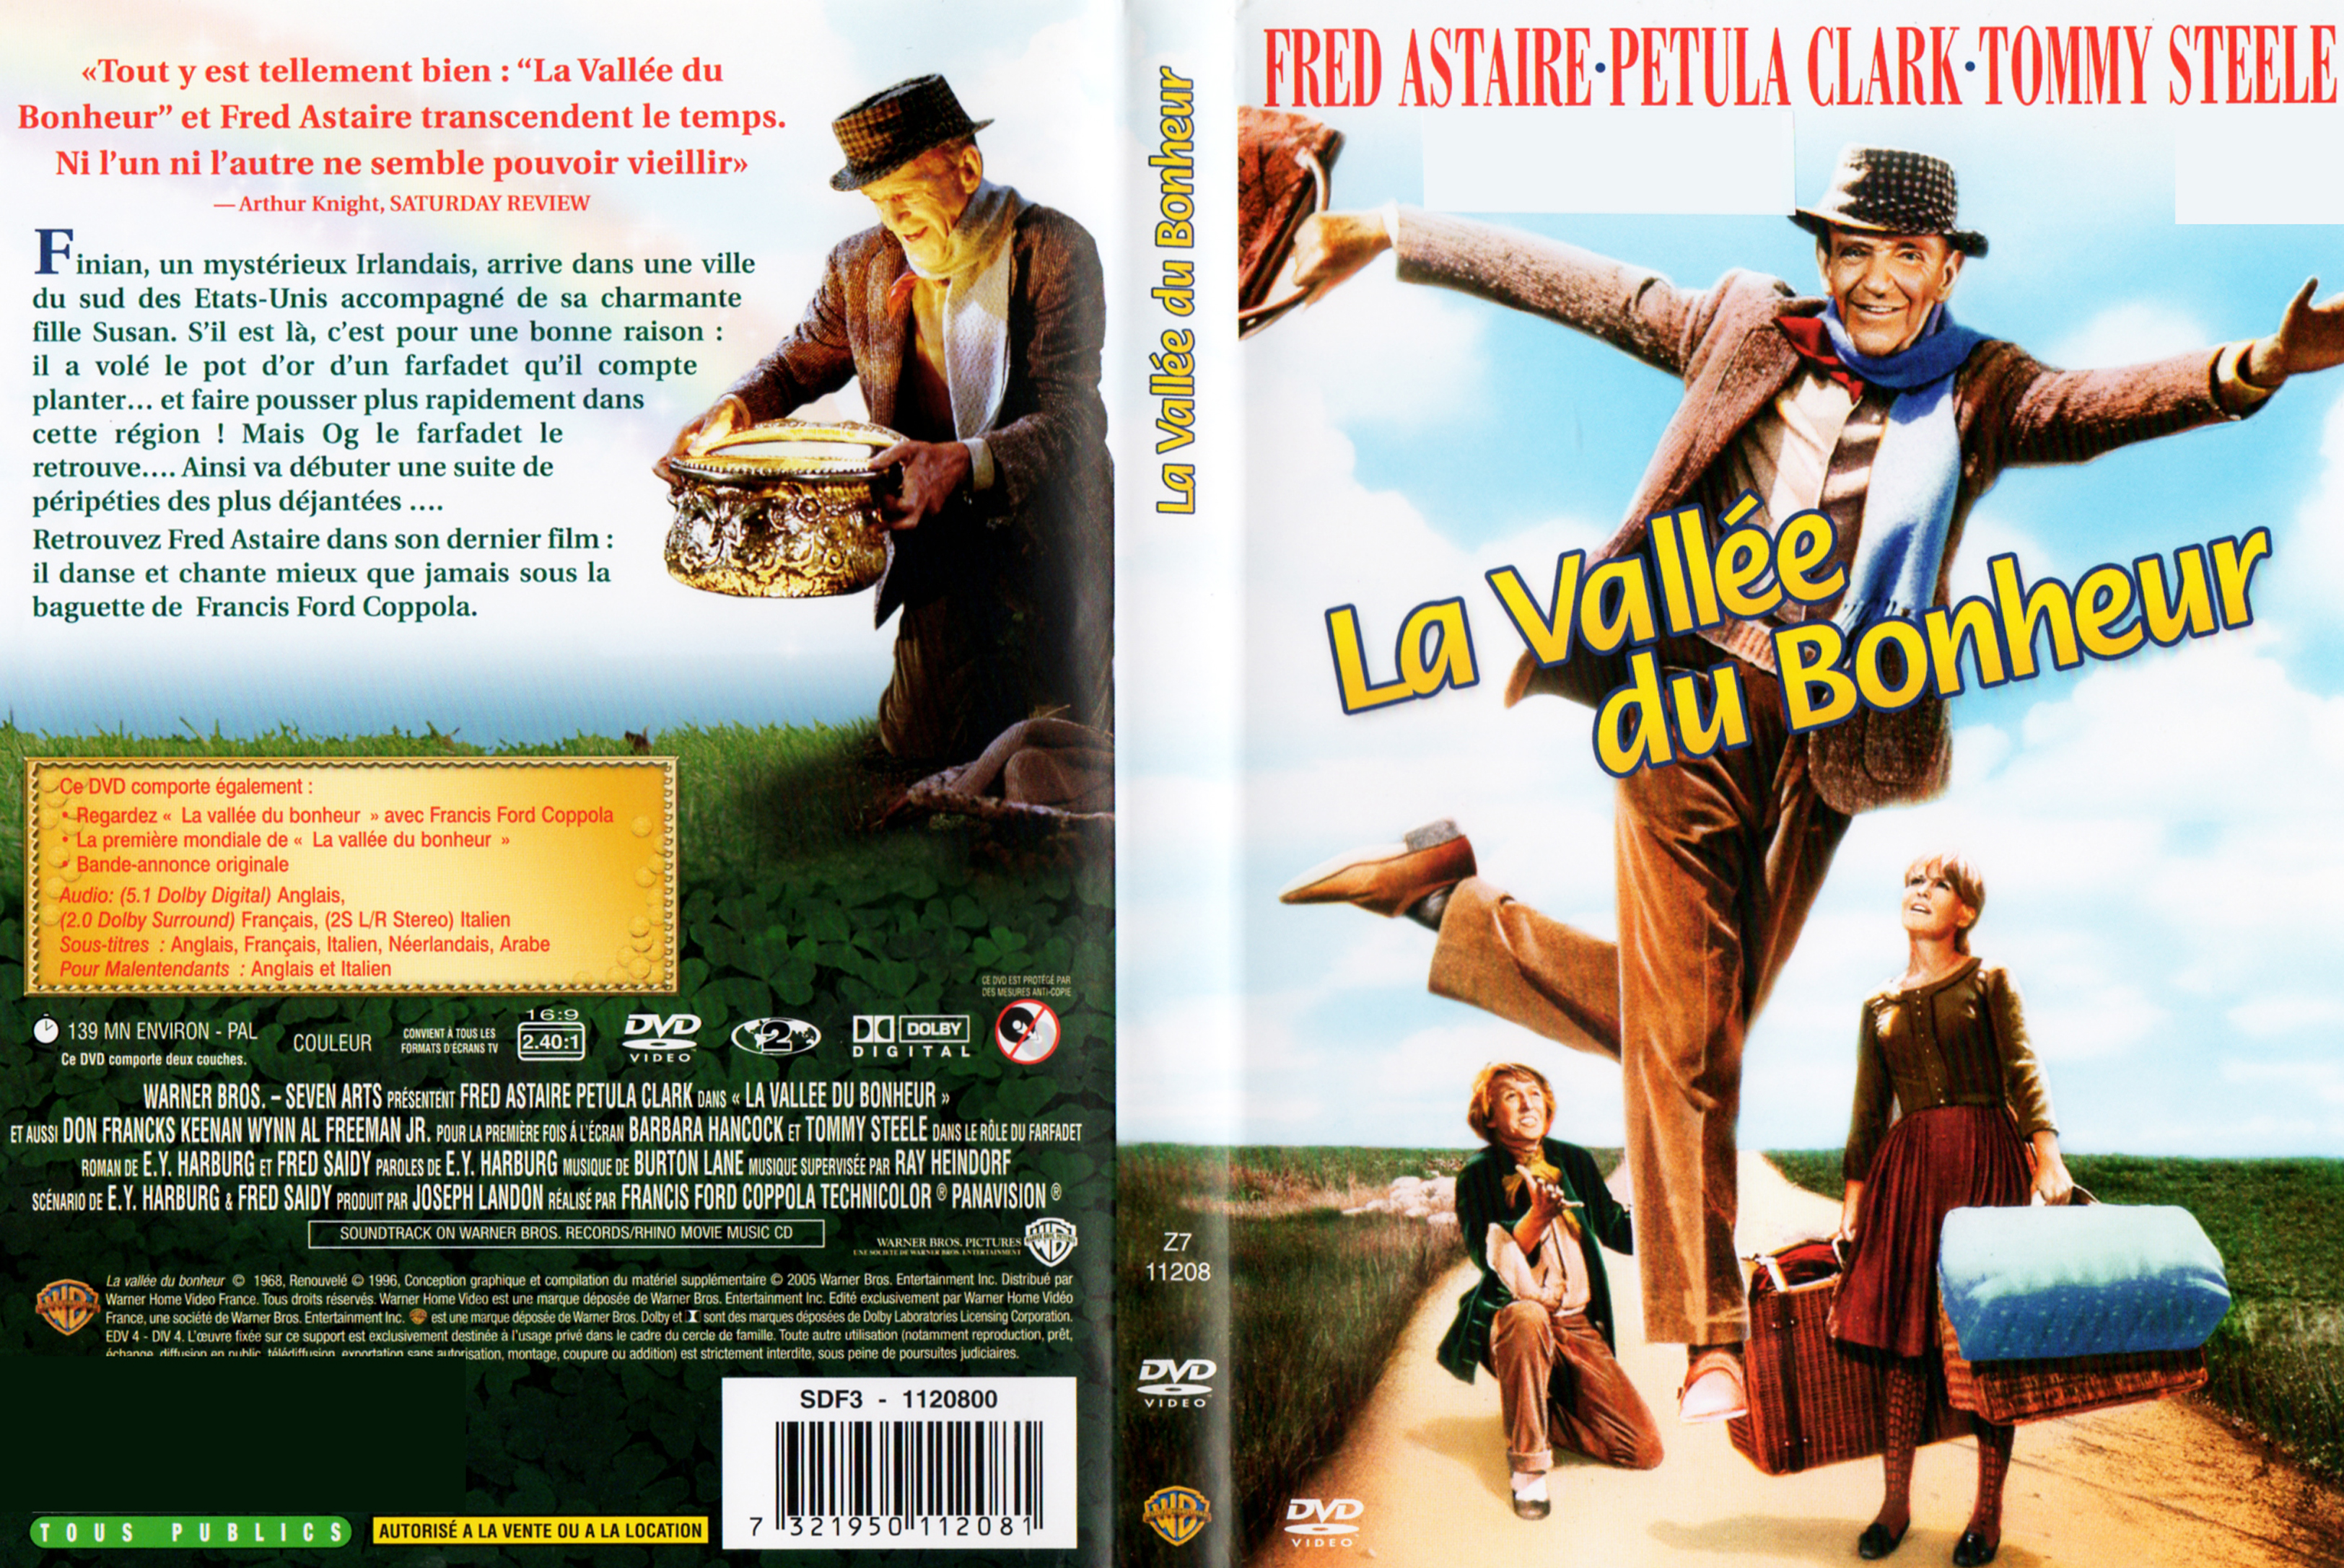 Jaquette DVD La valle du bonheur